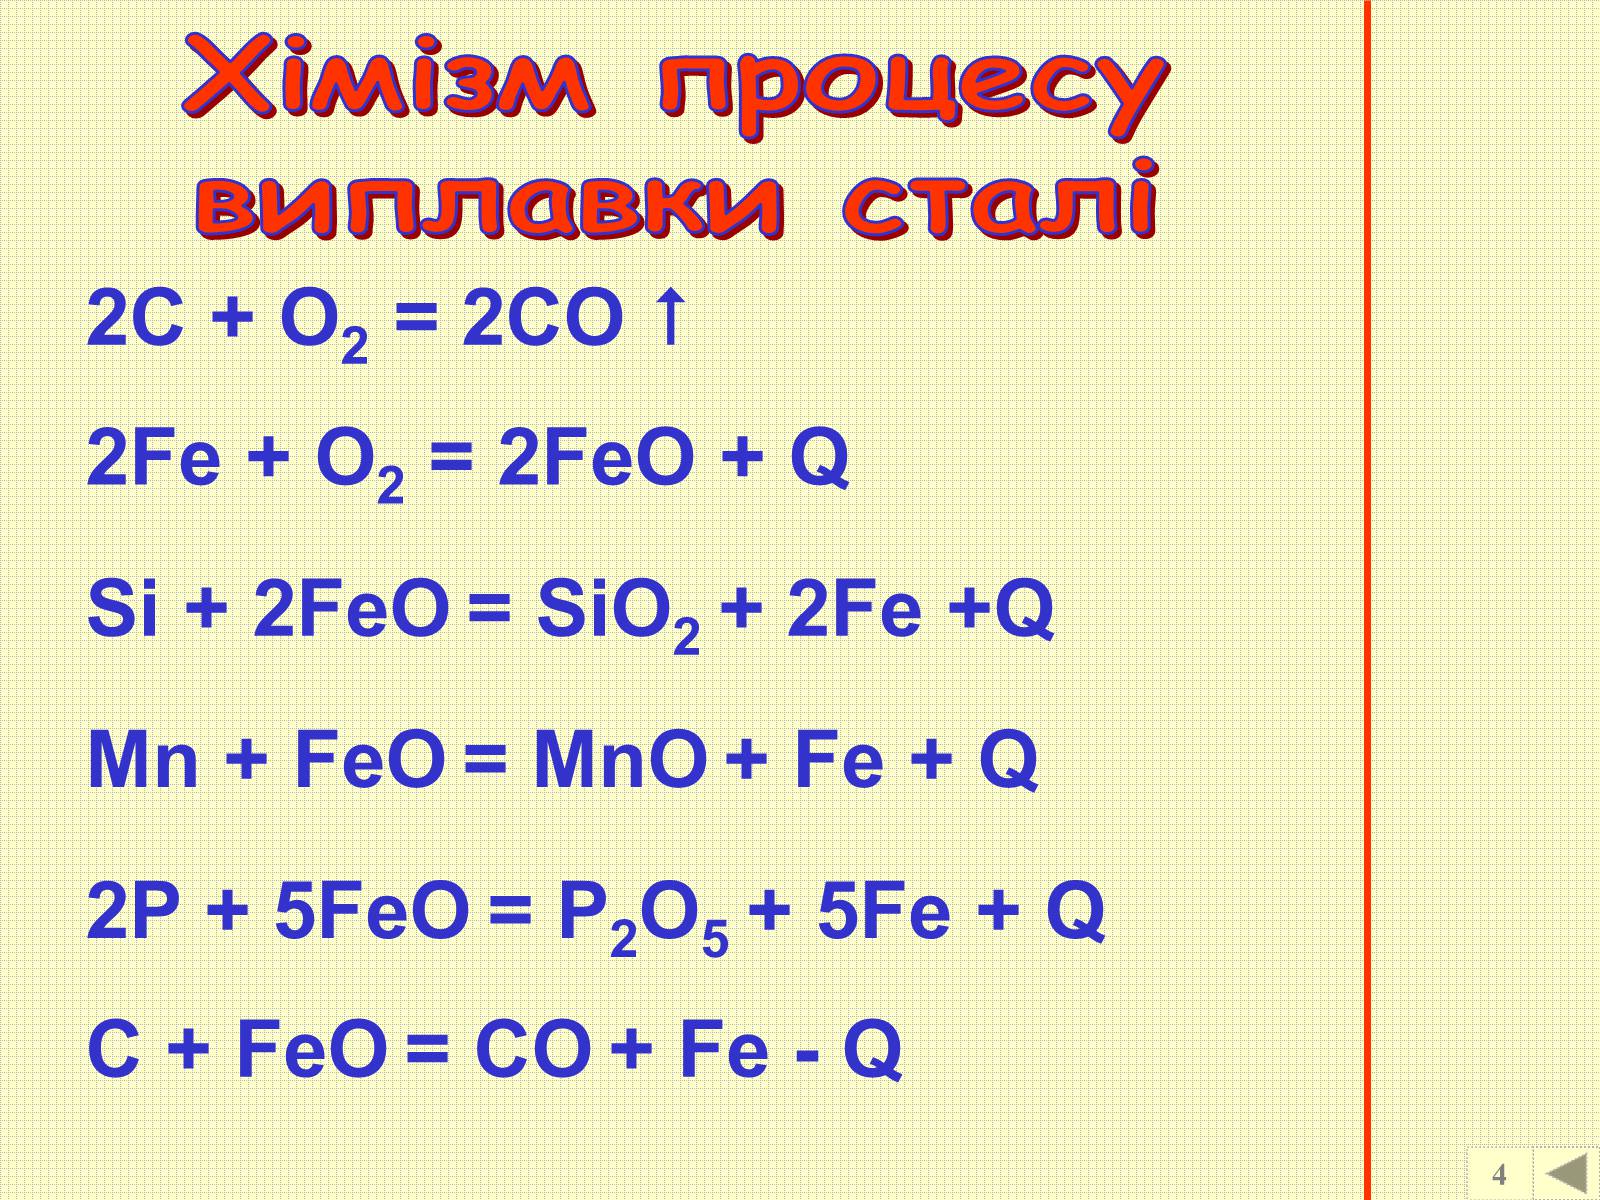 Feo c fe co. Fe2o3 Fe. Feo fe2o3. Fe o2 fe2o3. Fe2o3 + с = Fe + co.